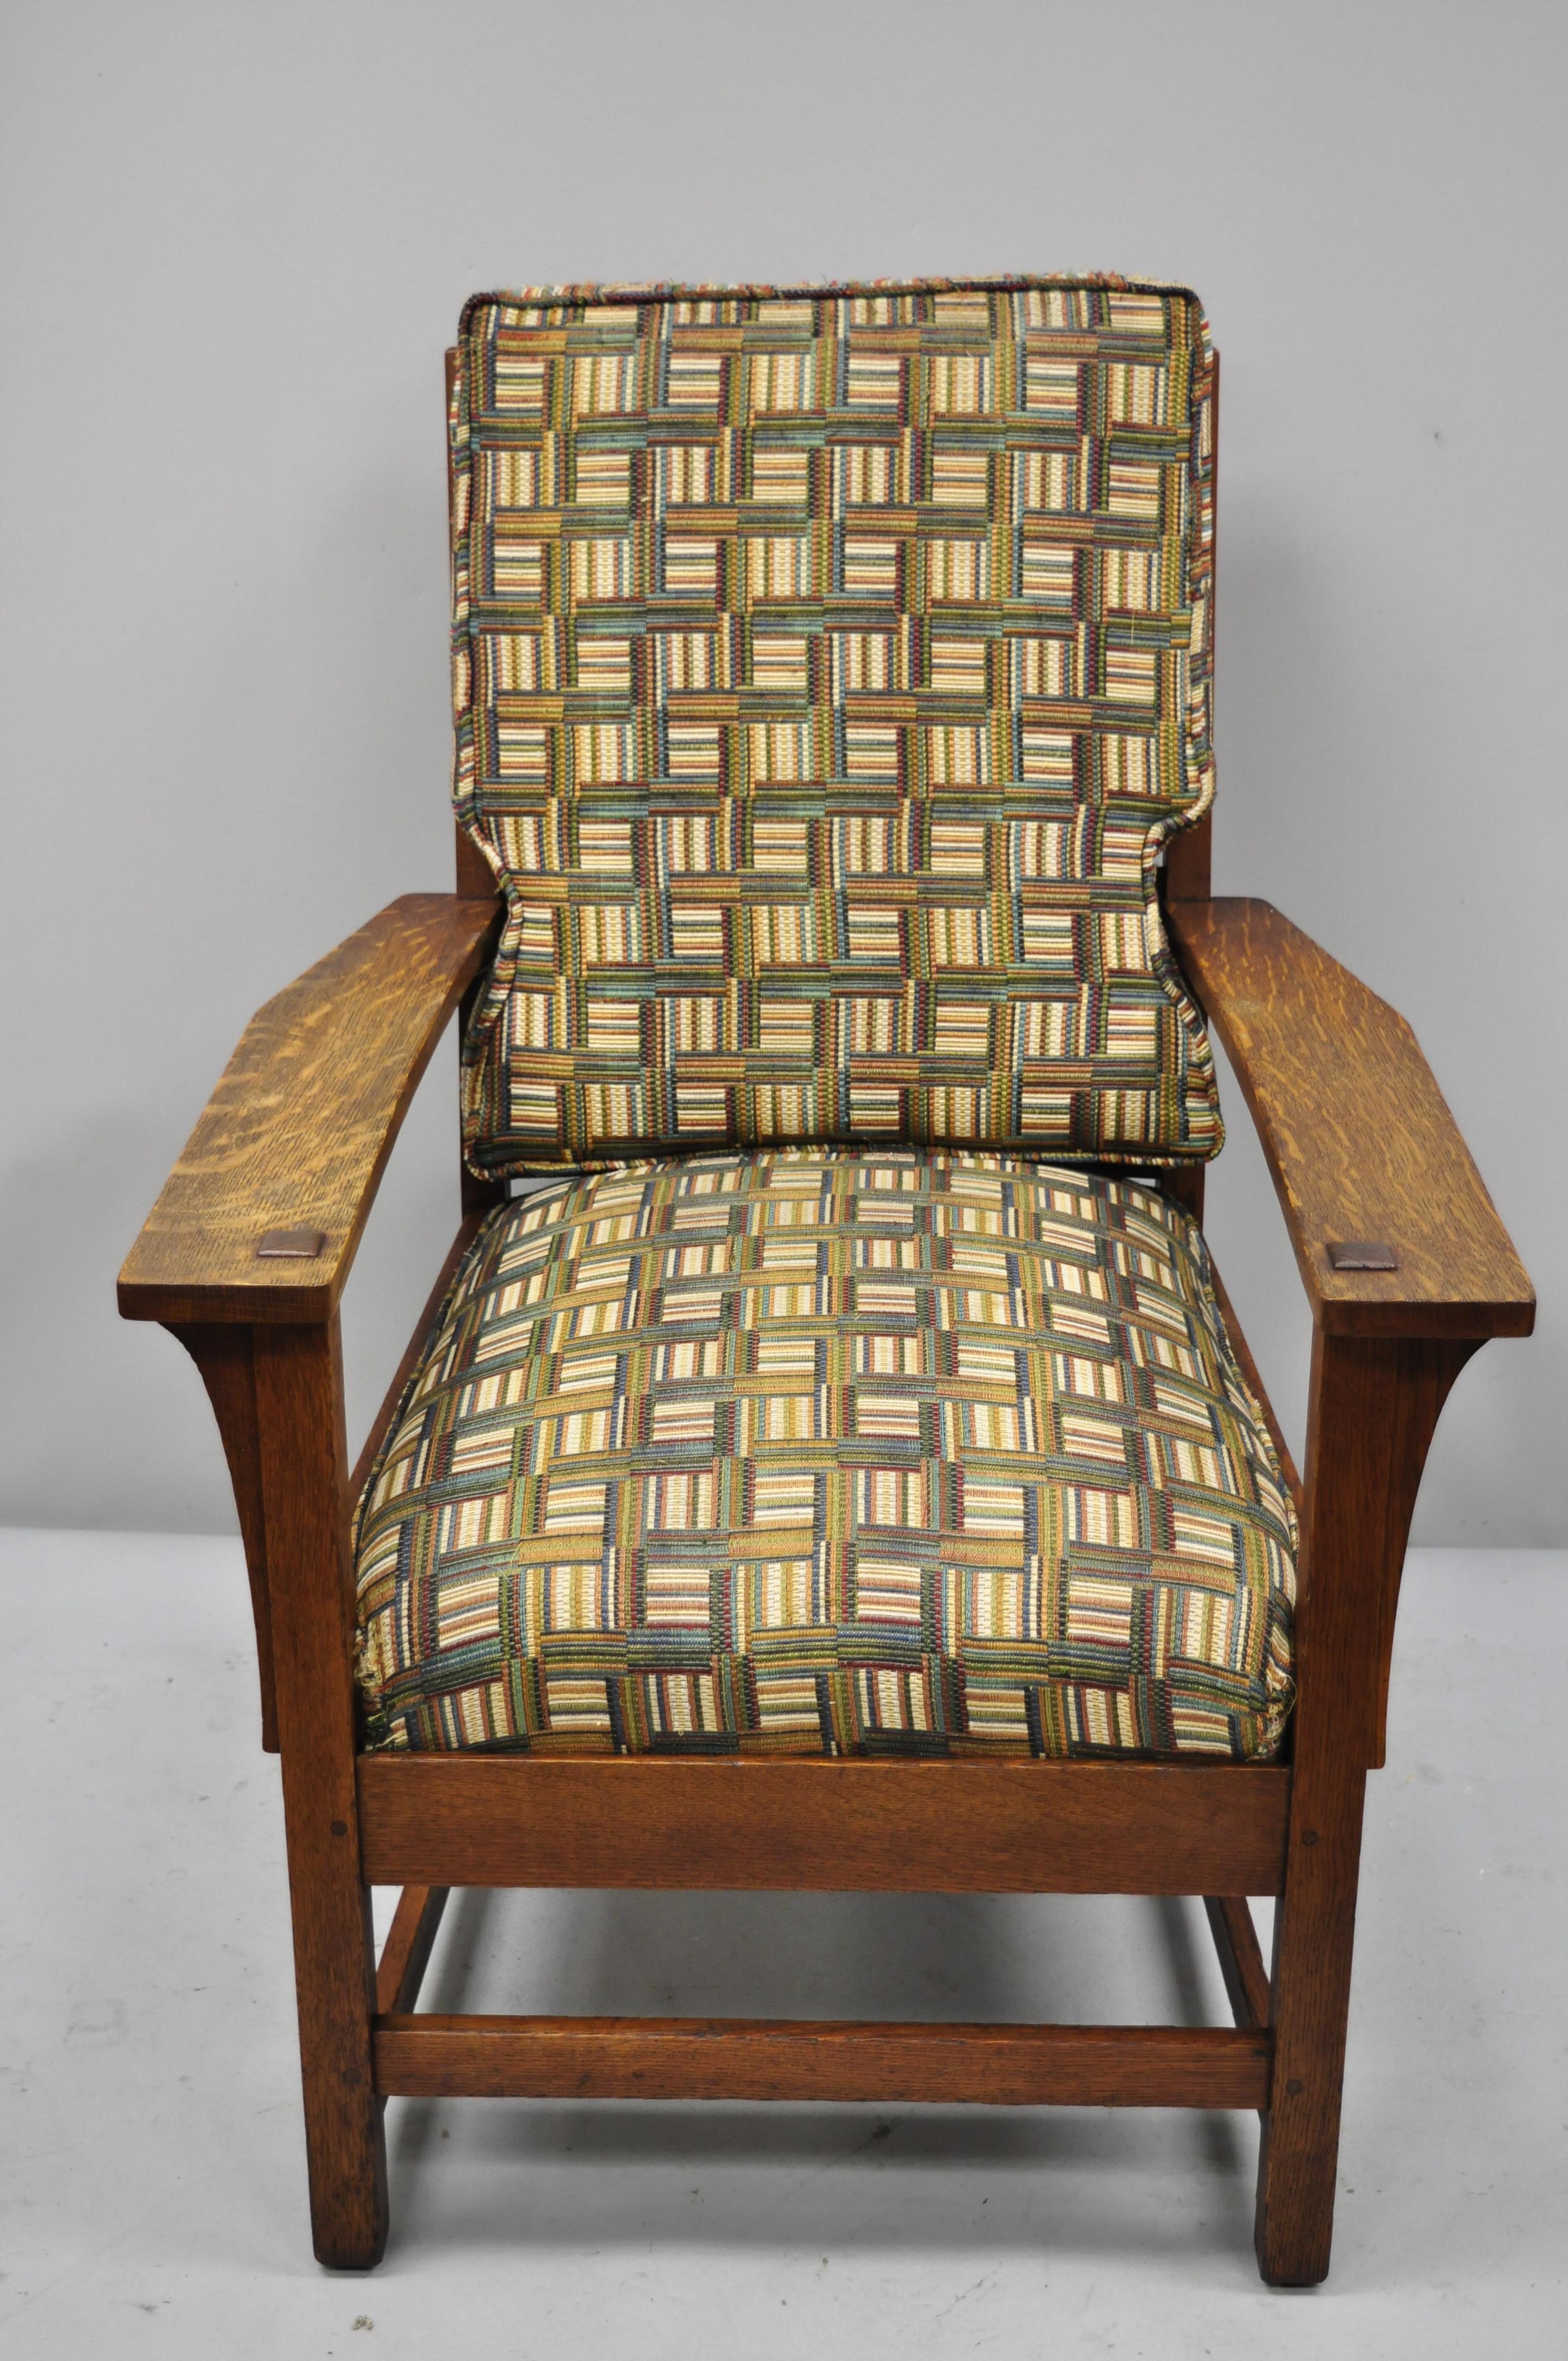 L & JG Stickley Mission oak Arts & Crafts armchair spring seat cushion. Cet article se caractérise par un coussin de siège à ressort, un dossier en échelle, une construction en bois massif, un beau grain de bois, un très bel article ancien, une